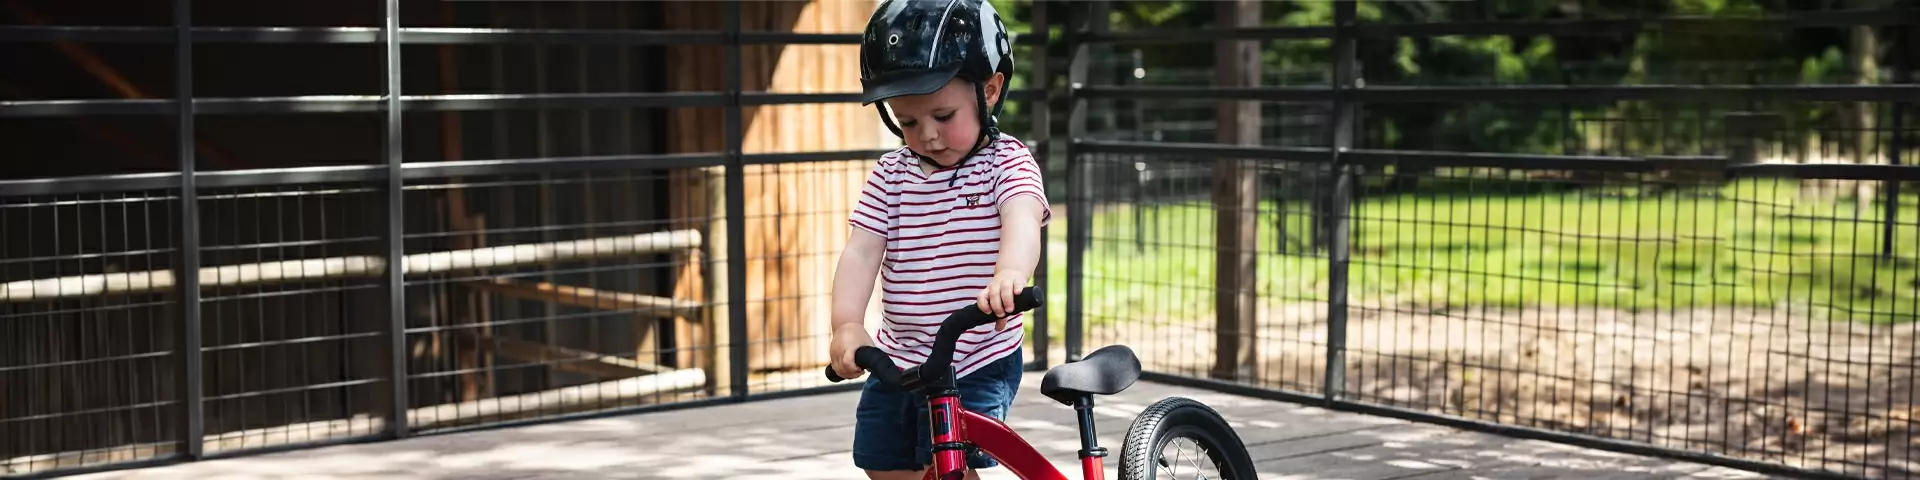 Rotelle Stabilizzatori bici bambino